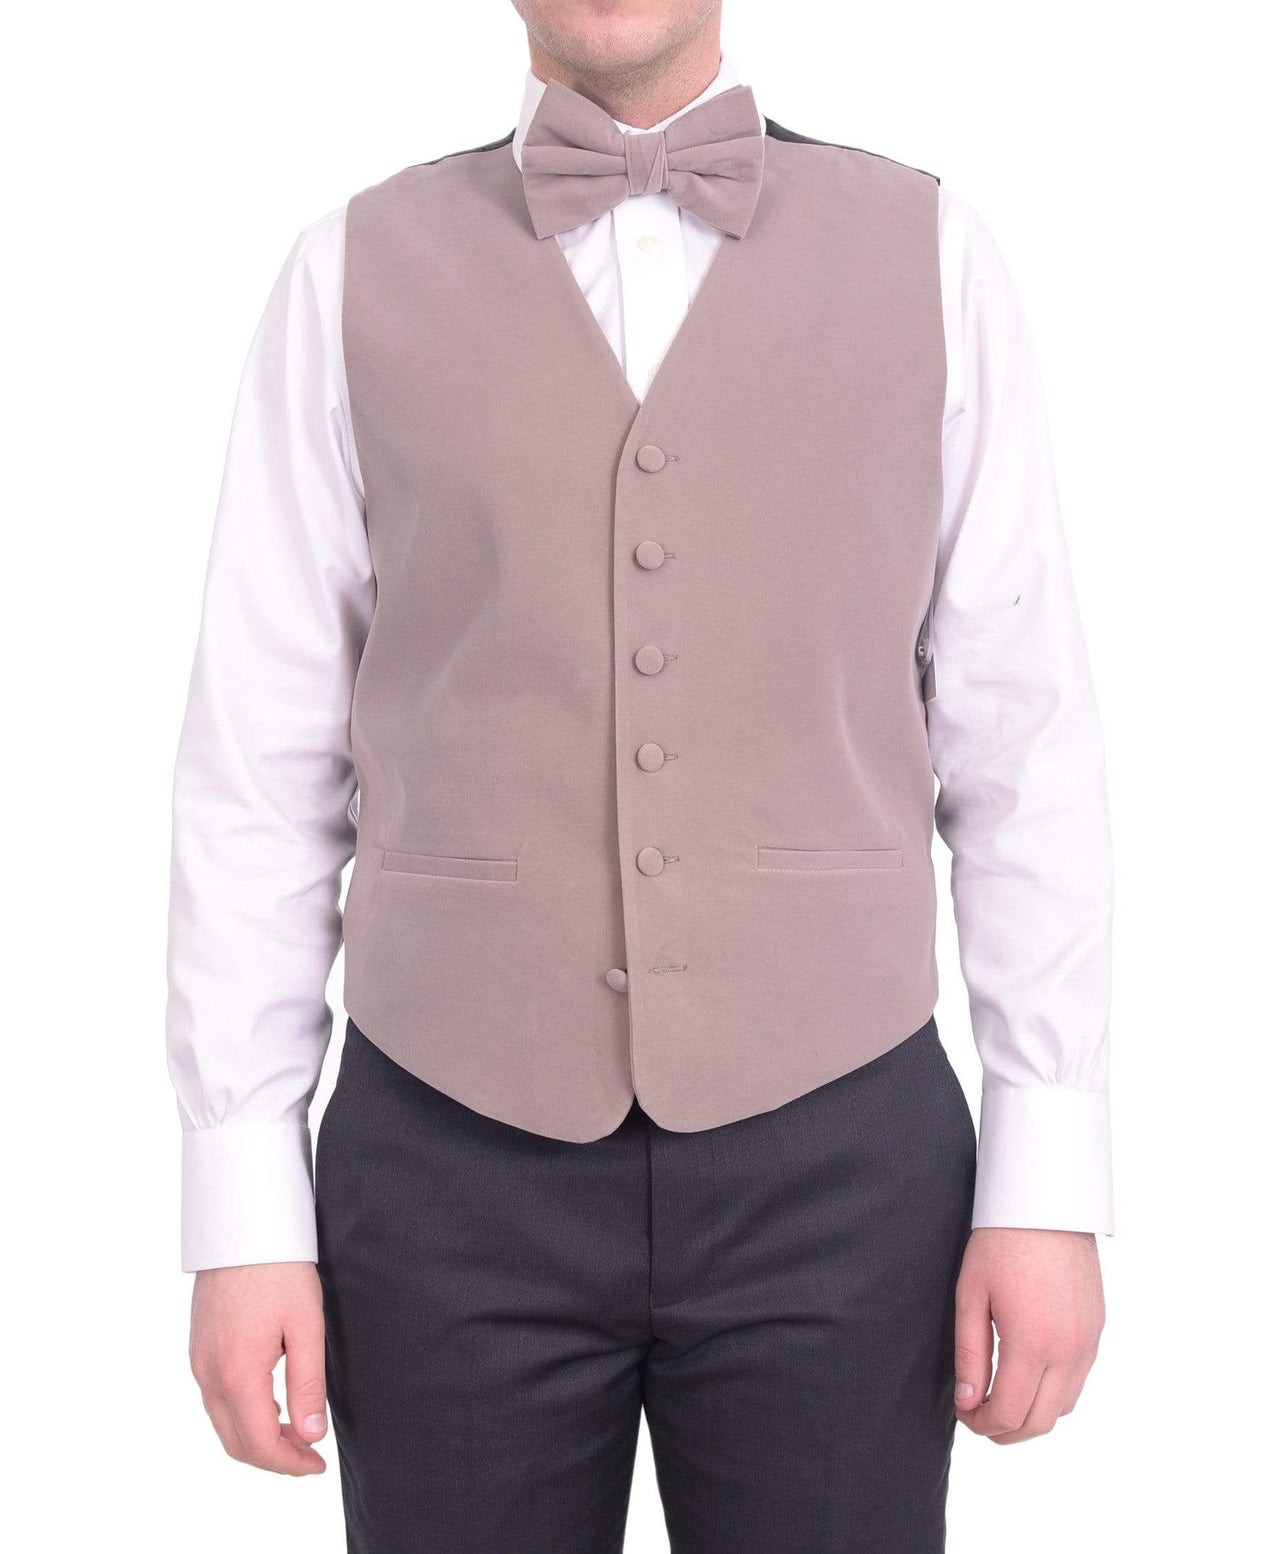 Steven Land Solid Gray Taupe Velvet Velour Vest With Necktie & Bowtie Set - The Suit Depot